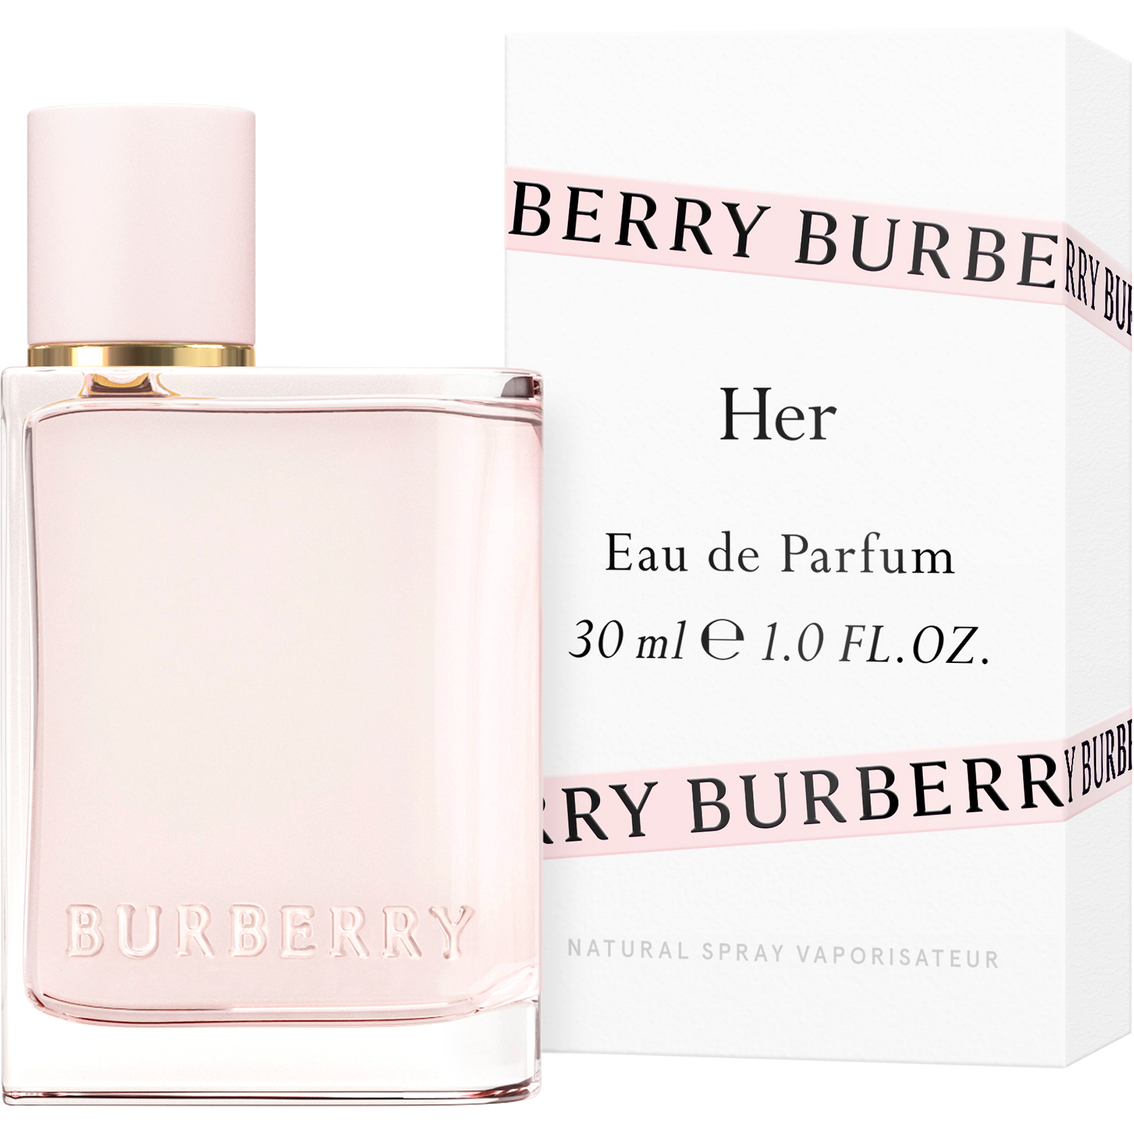 Burberry Her Eau de Parfum Spray - Image 2 of 3